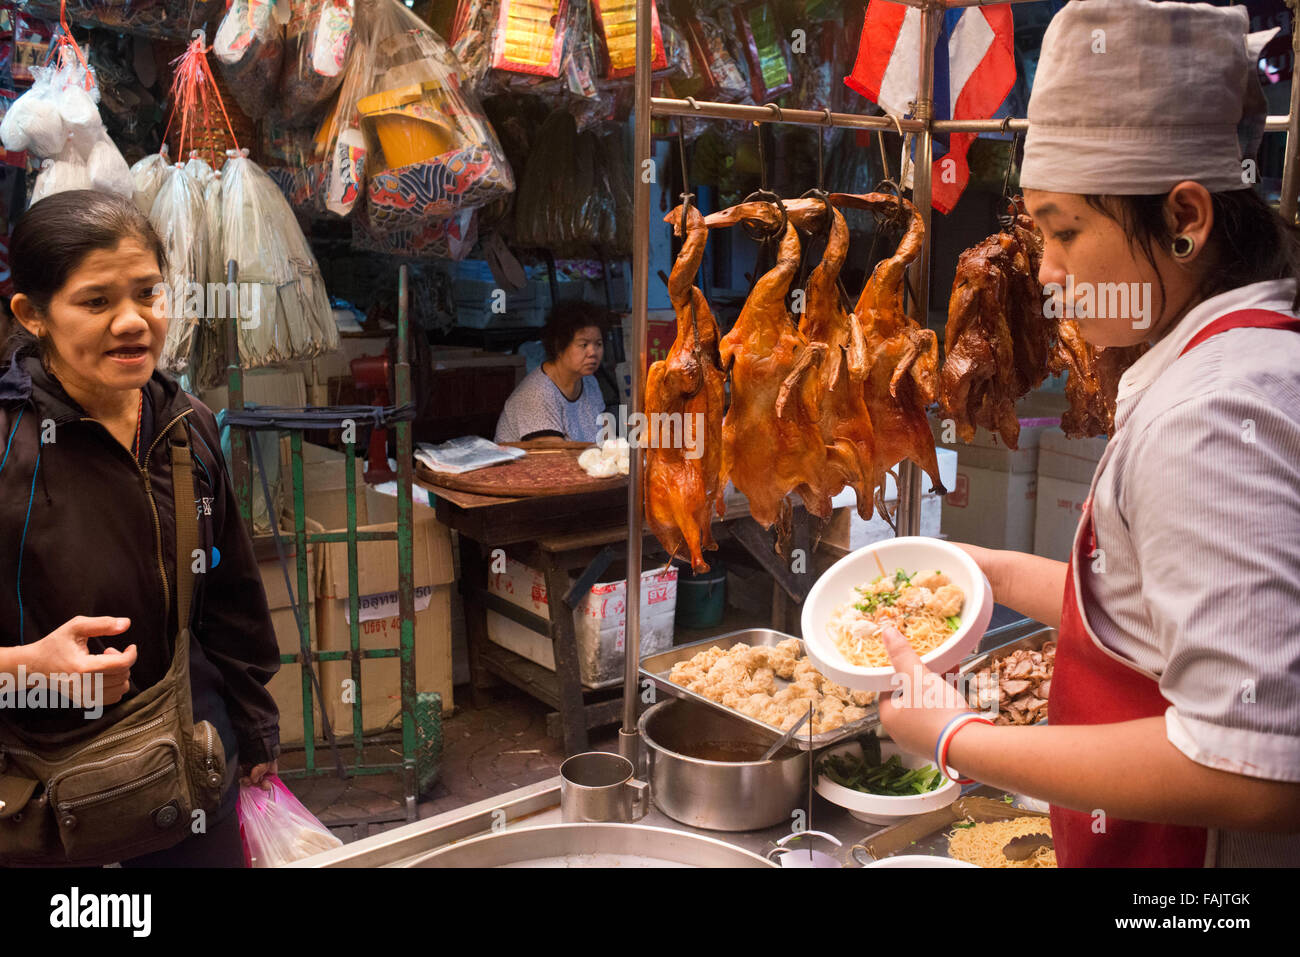 D'une cuisinière et d'un crépuscule rôties dans un restuarnt. Le quartier chinois de Bangkok, Thaïlande marché. Thanon Yaowarat Road dans la nuit dans le centre de Chinatown d Banque D'Images